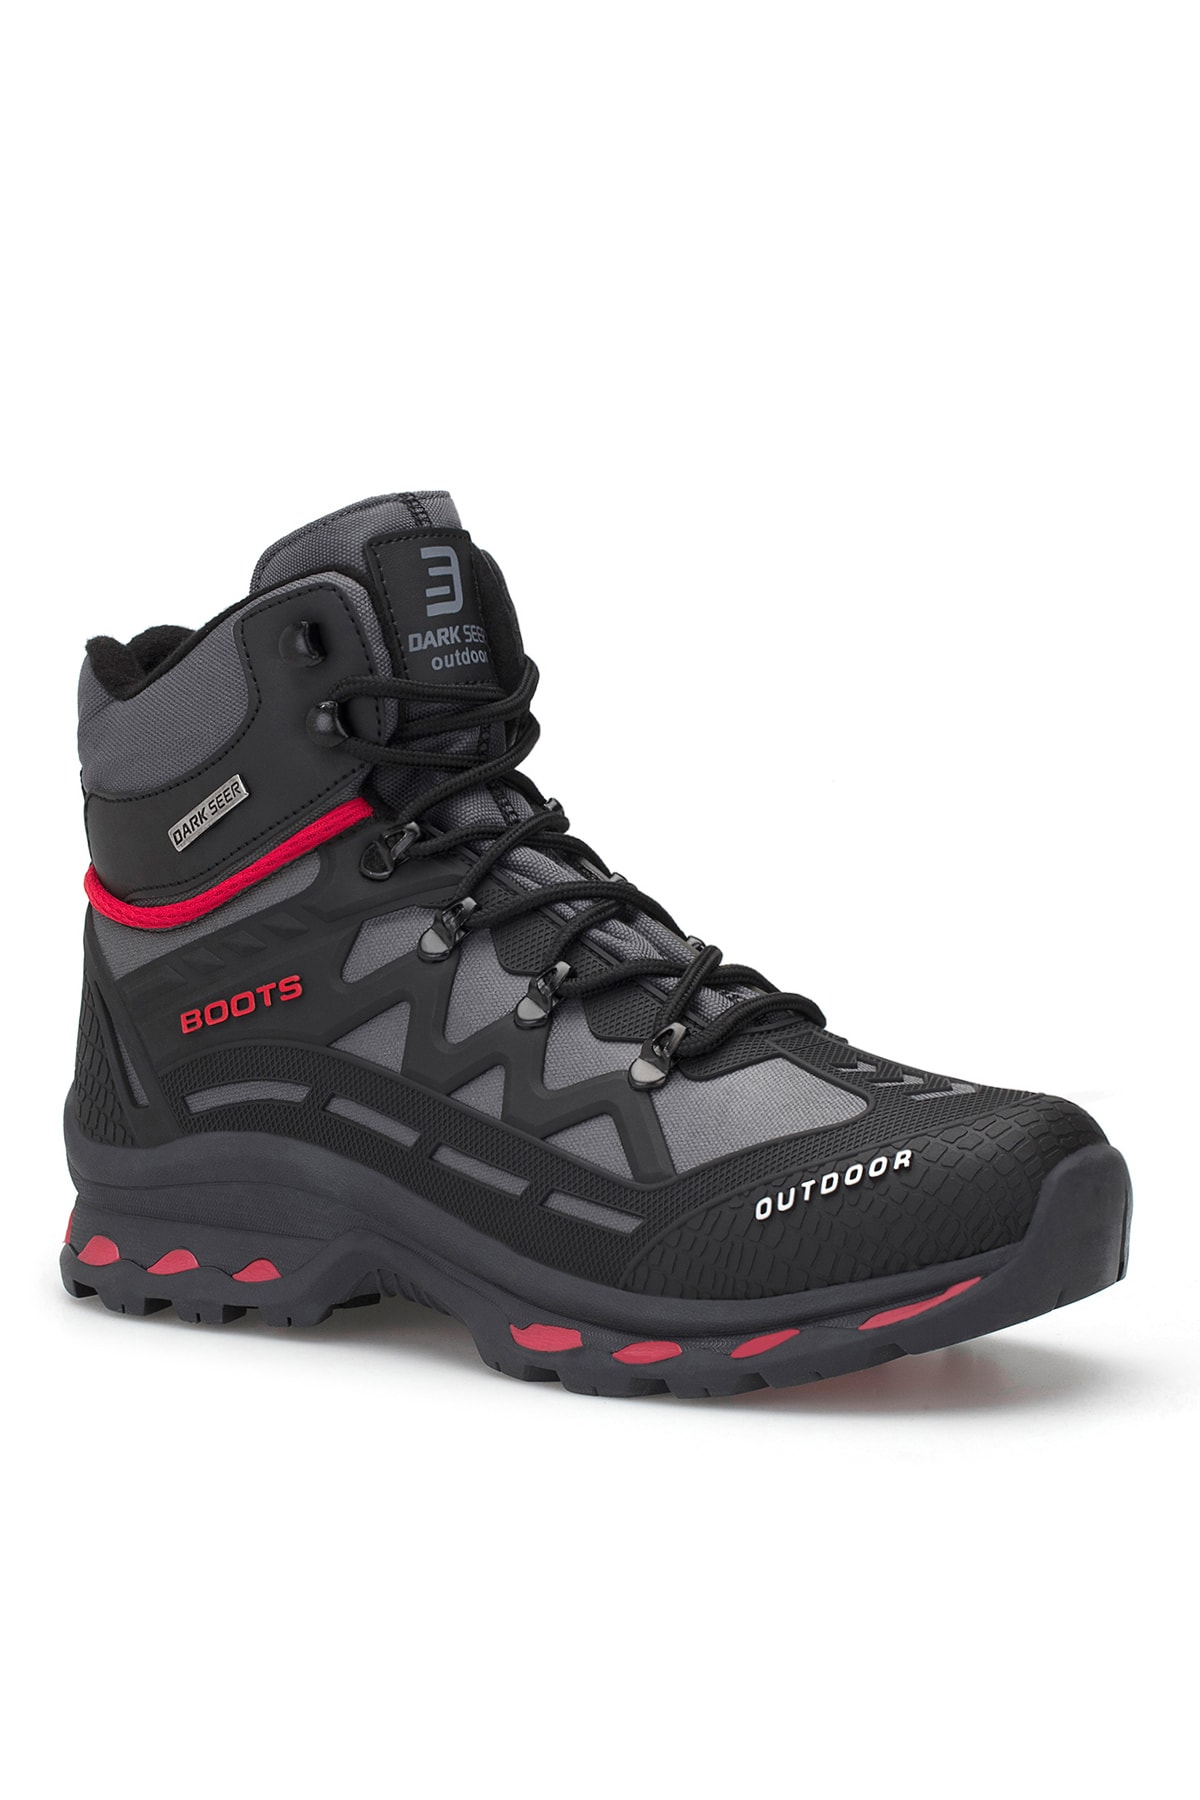 DARK SEER Black Smoked Unisex Outdoor Trekking Boots.